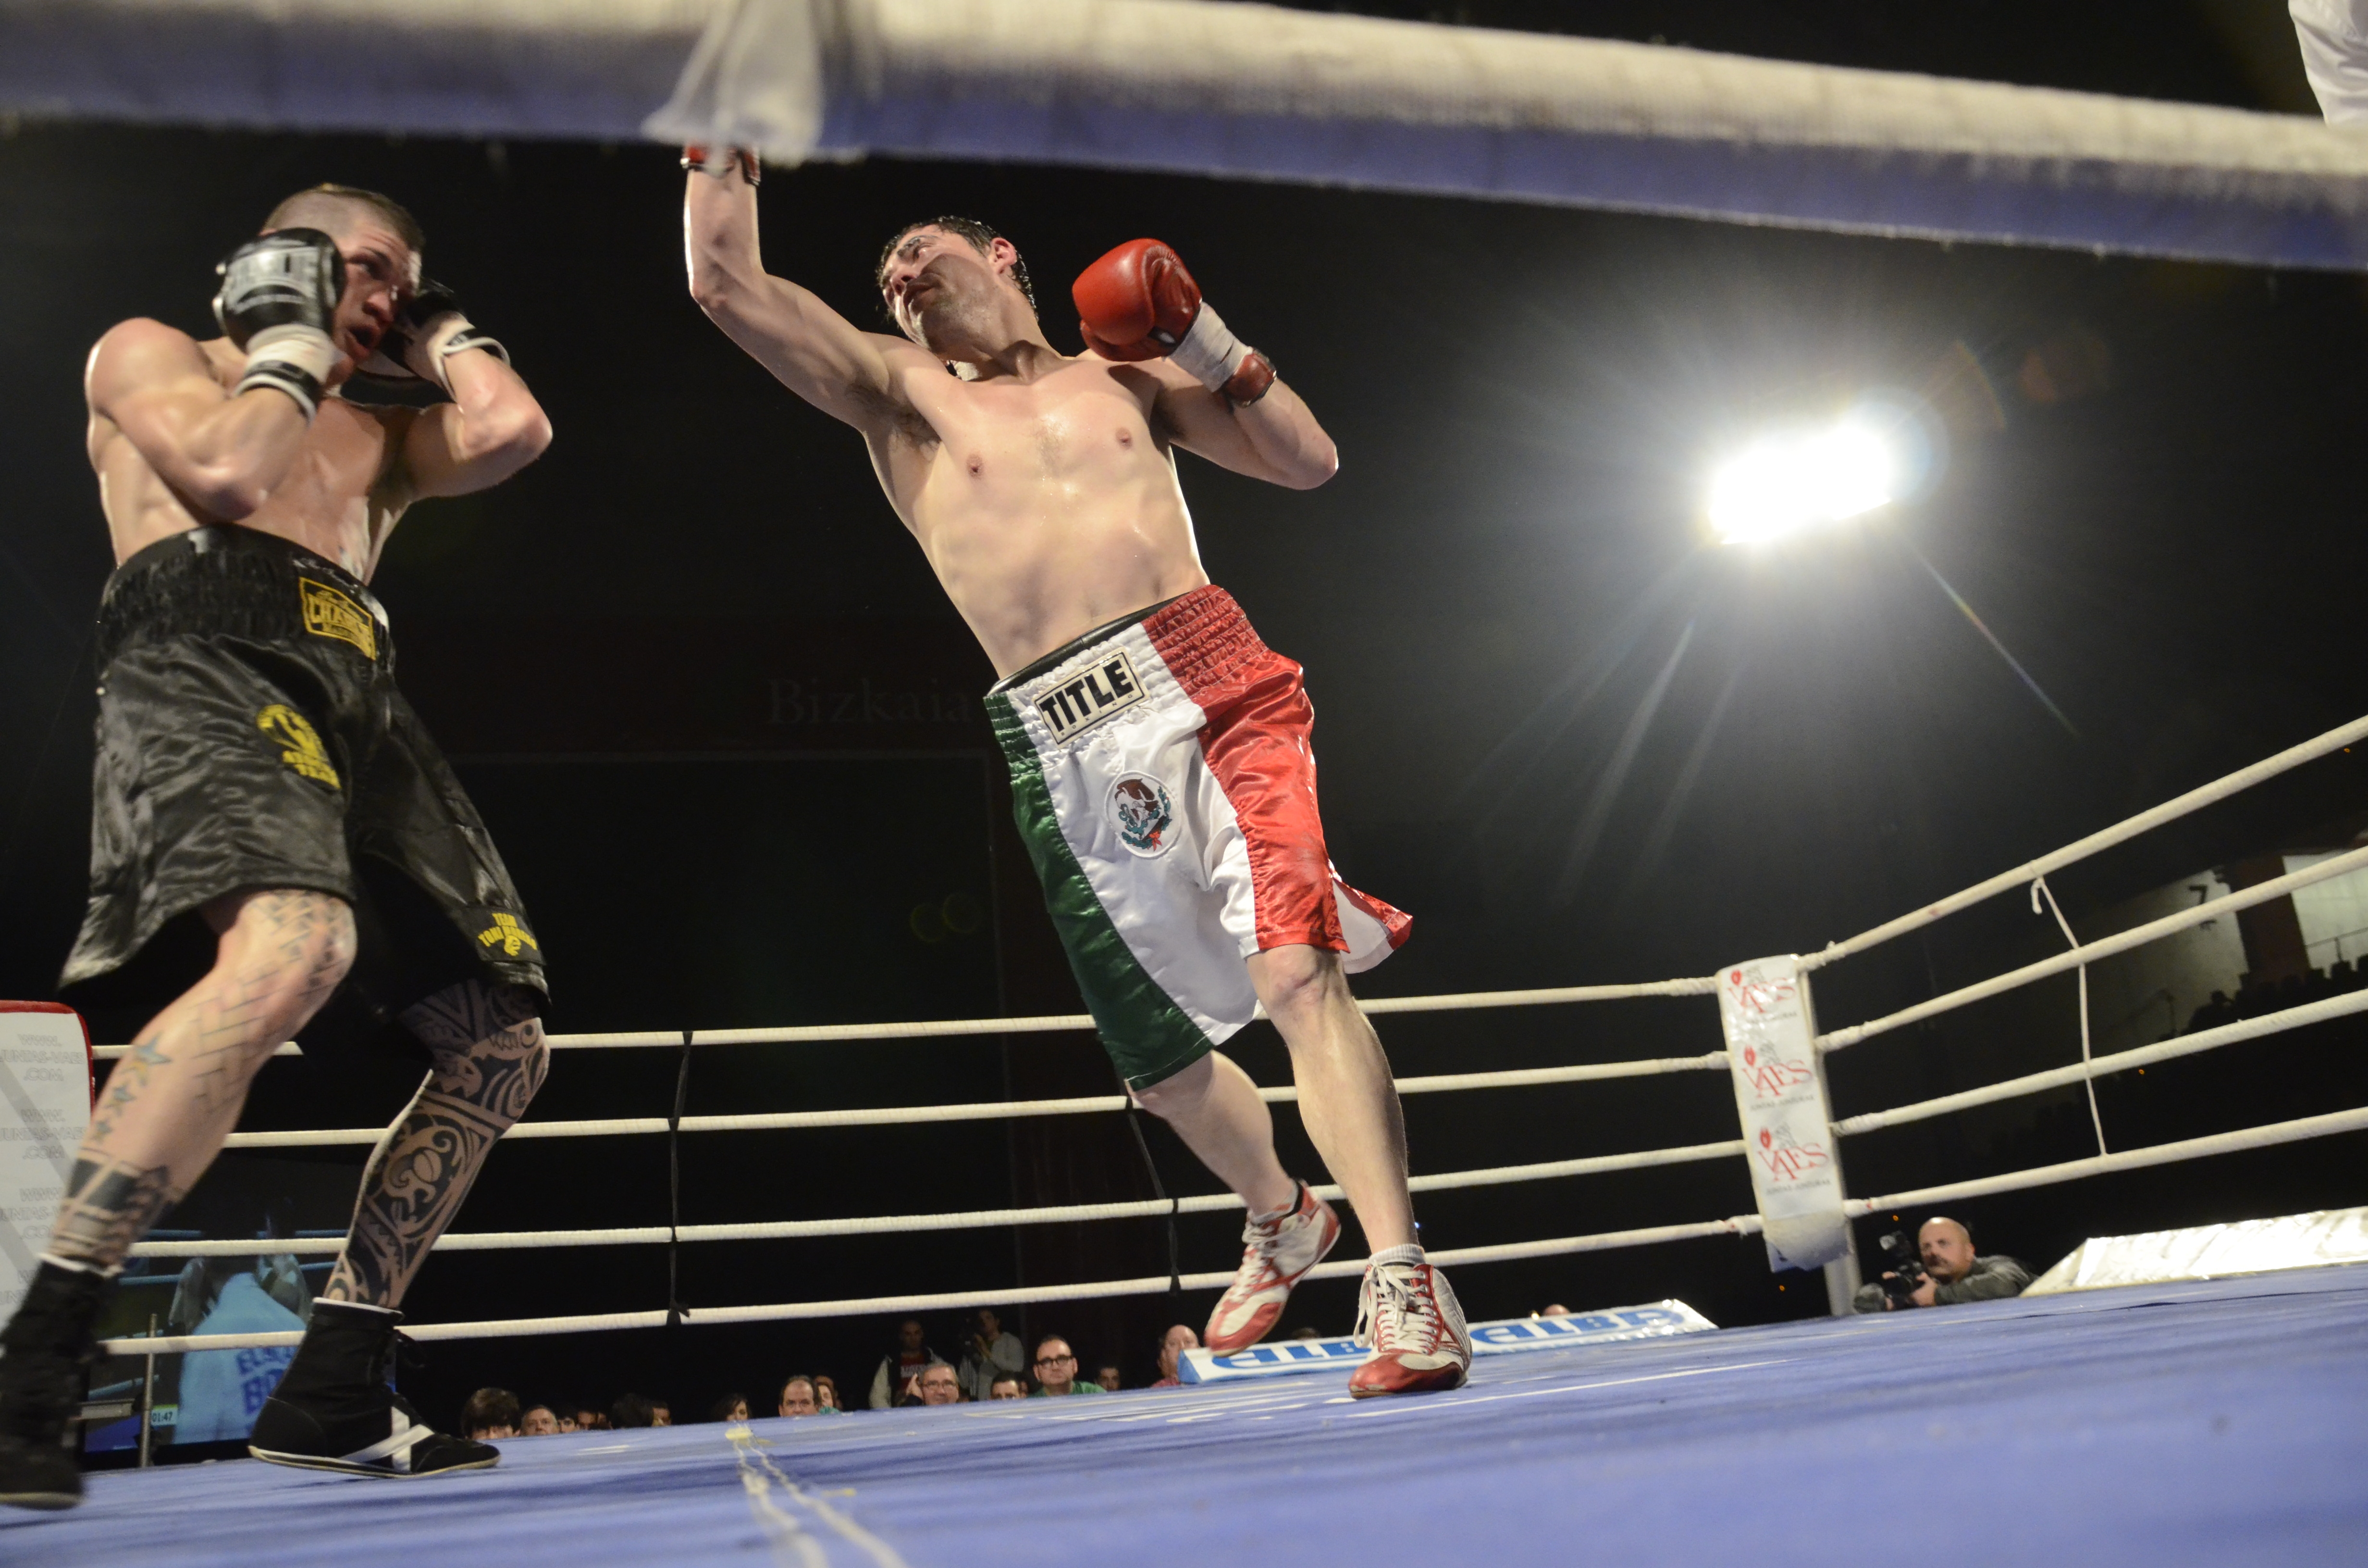 Combate de boxeo entre Andoni Gago e Iván Ruiz, Bilbao 1 de febrero de 2013